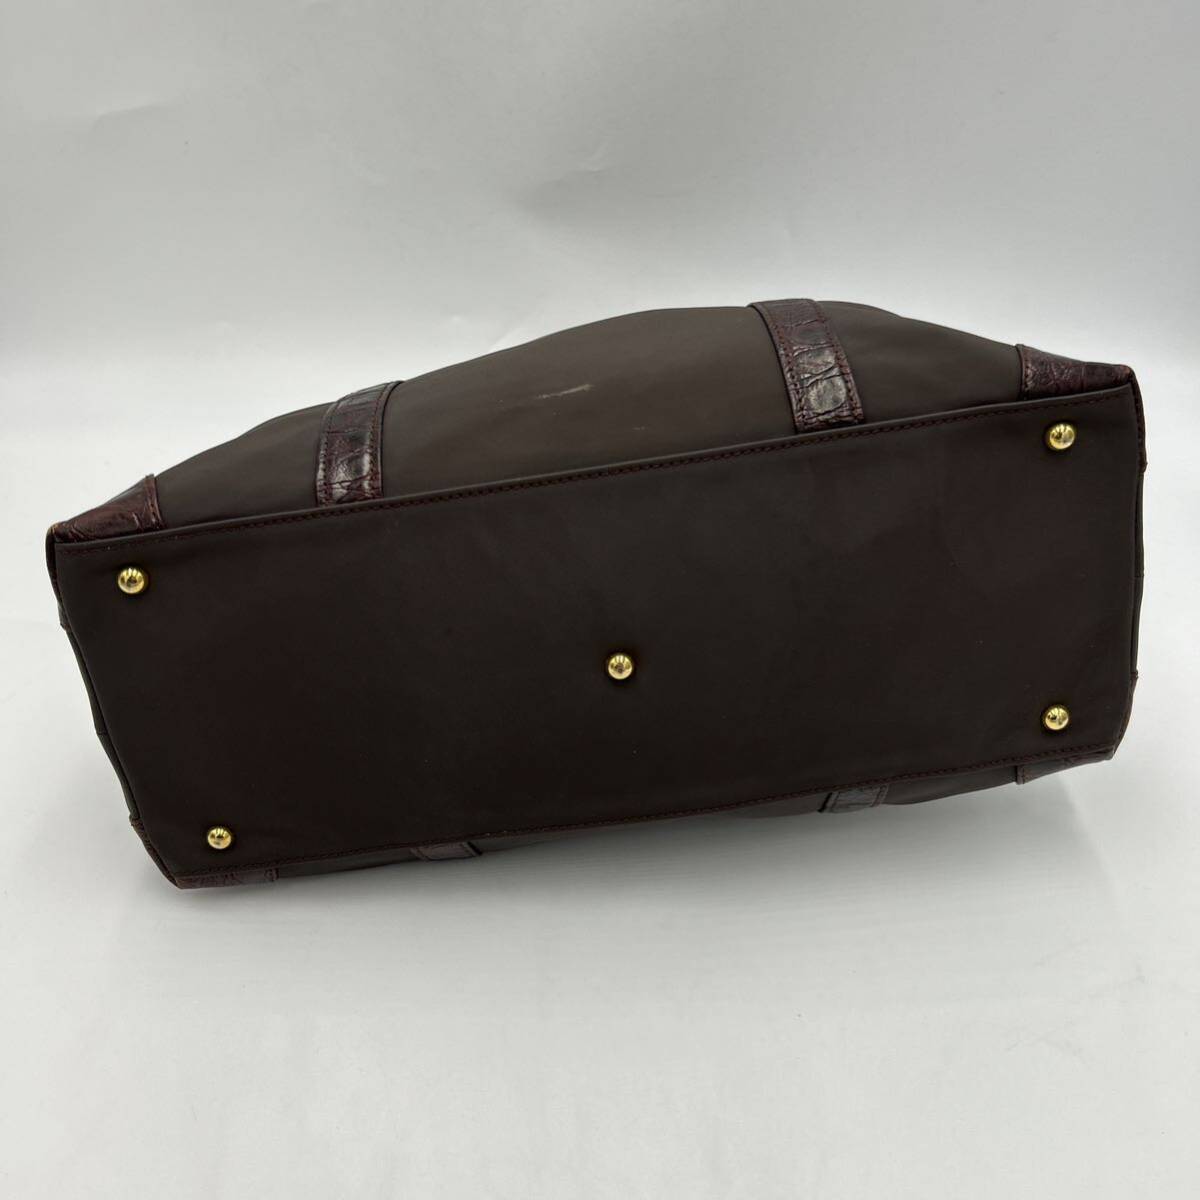 A @ 洗礼されたデザイン '高級感溢れる' LEILIAN レリアン LEATHER 切り替え トートバッグ 手提げ鞄 ハンドバッグ 婦人鞄 レディース 茶系の画像5